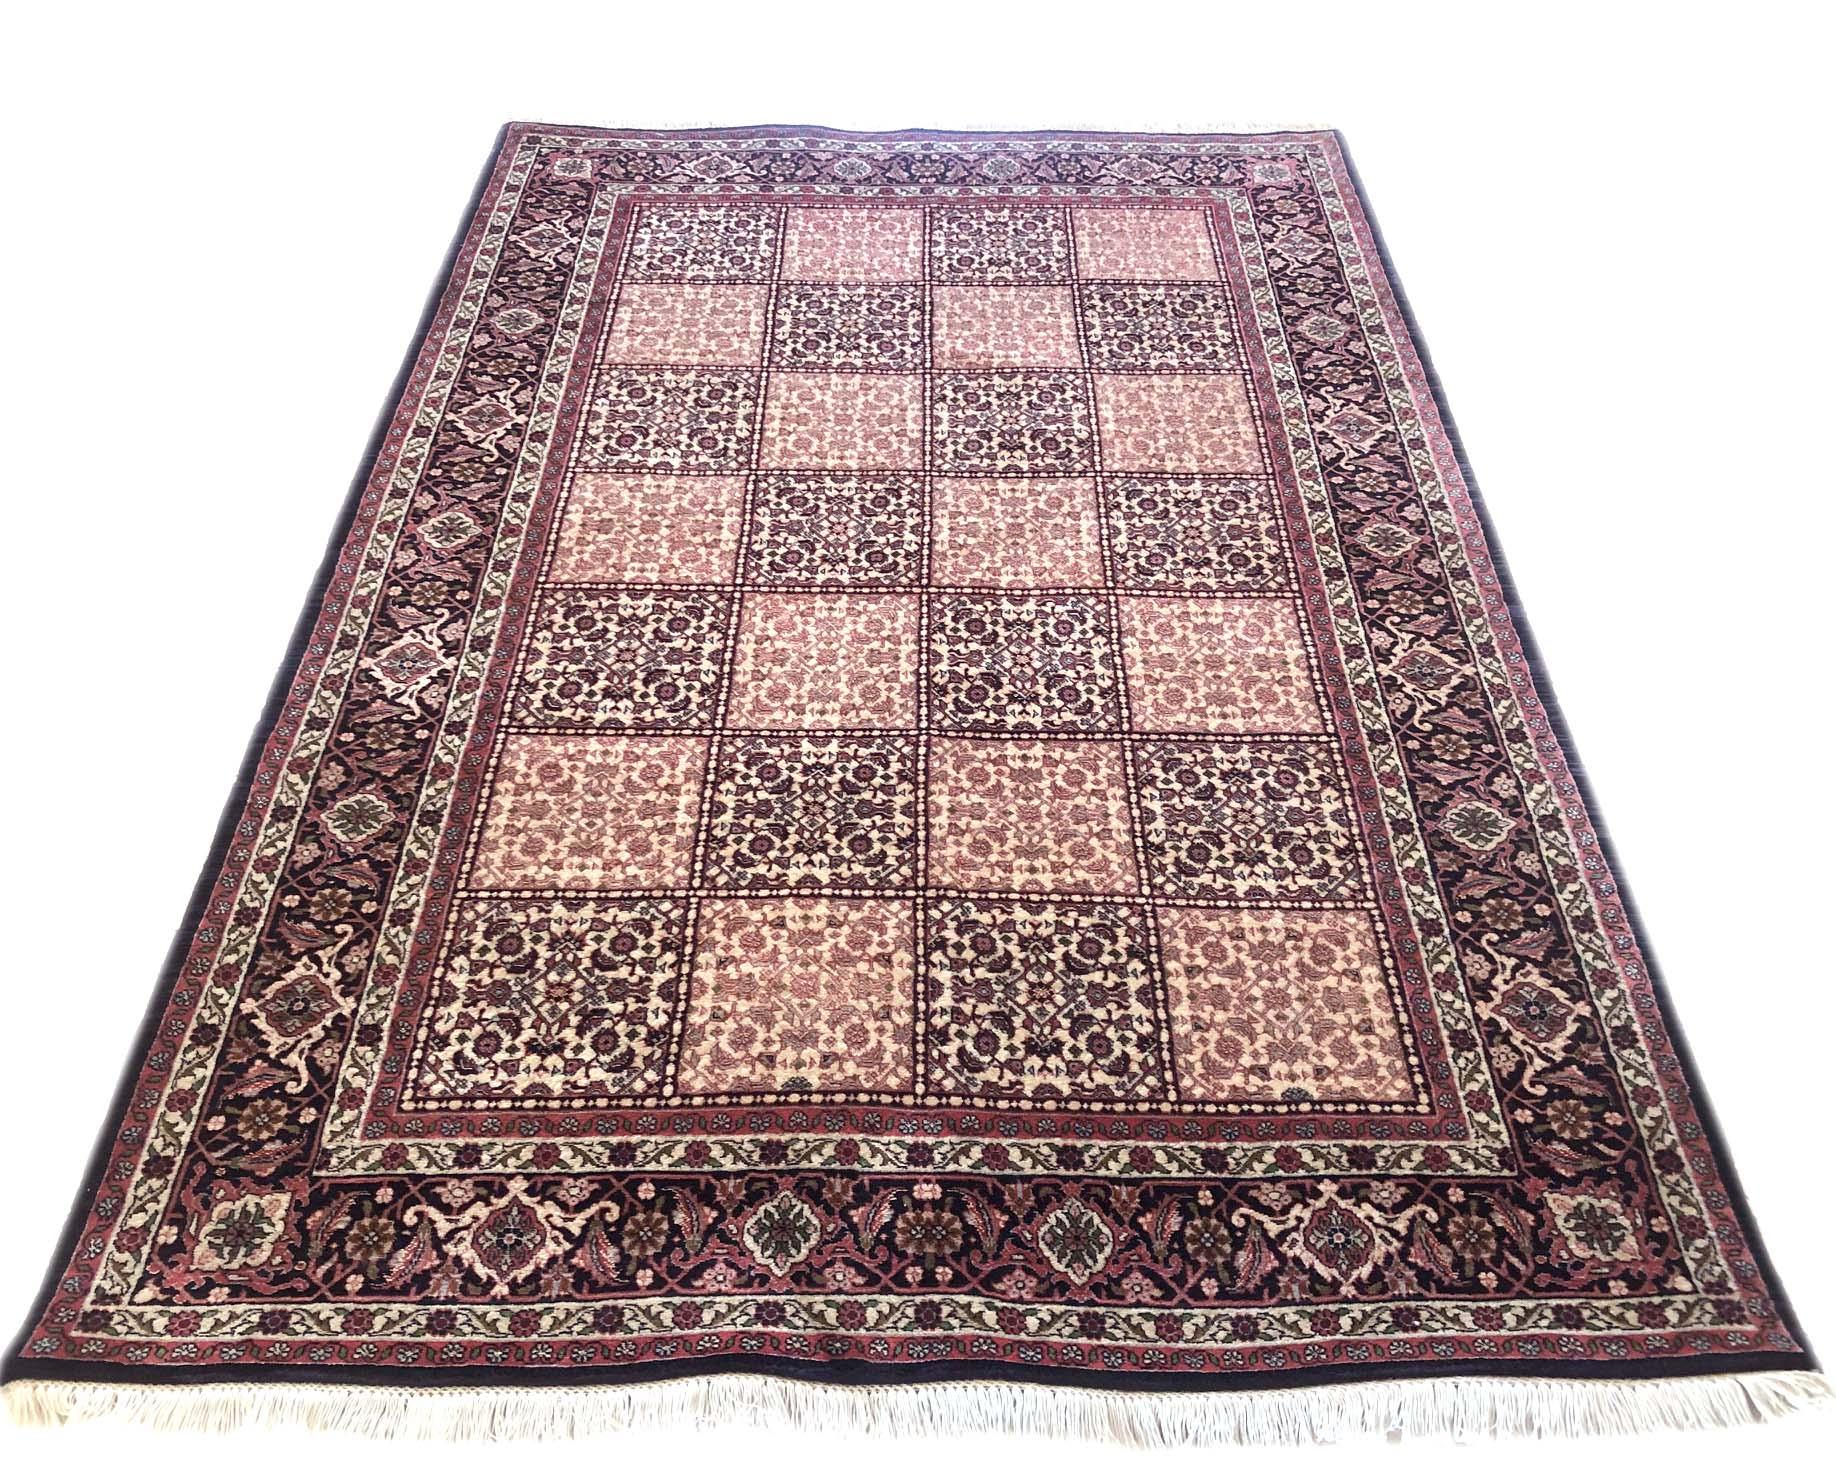 Cette pièce est un tapis persan Bijar fait à la main. Cette pièce est composée de laine et de soie avec une base en coton. Les couleurs de base sont le rouge et le crème, avec une bordure noire. Ce tapis présente un design très détaillé avec un